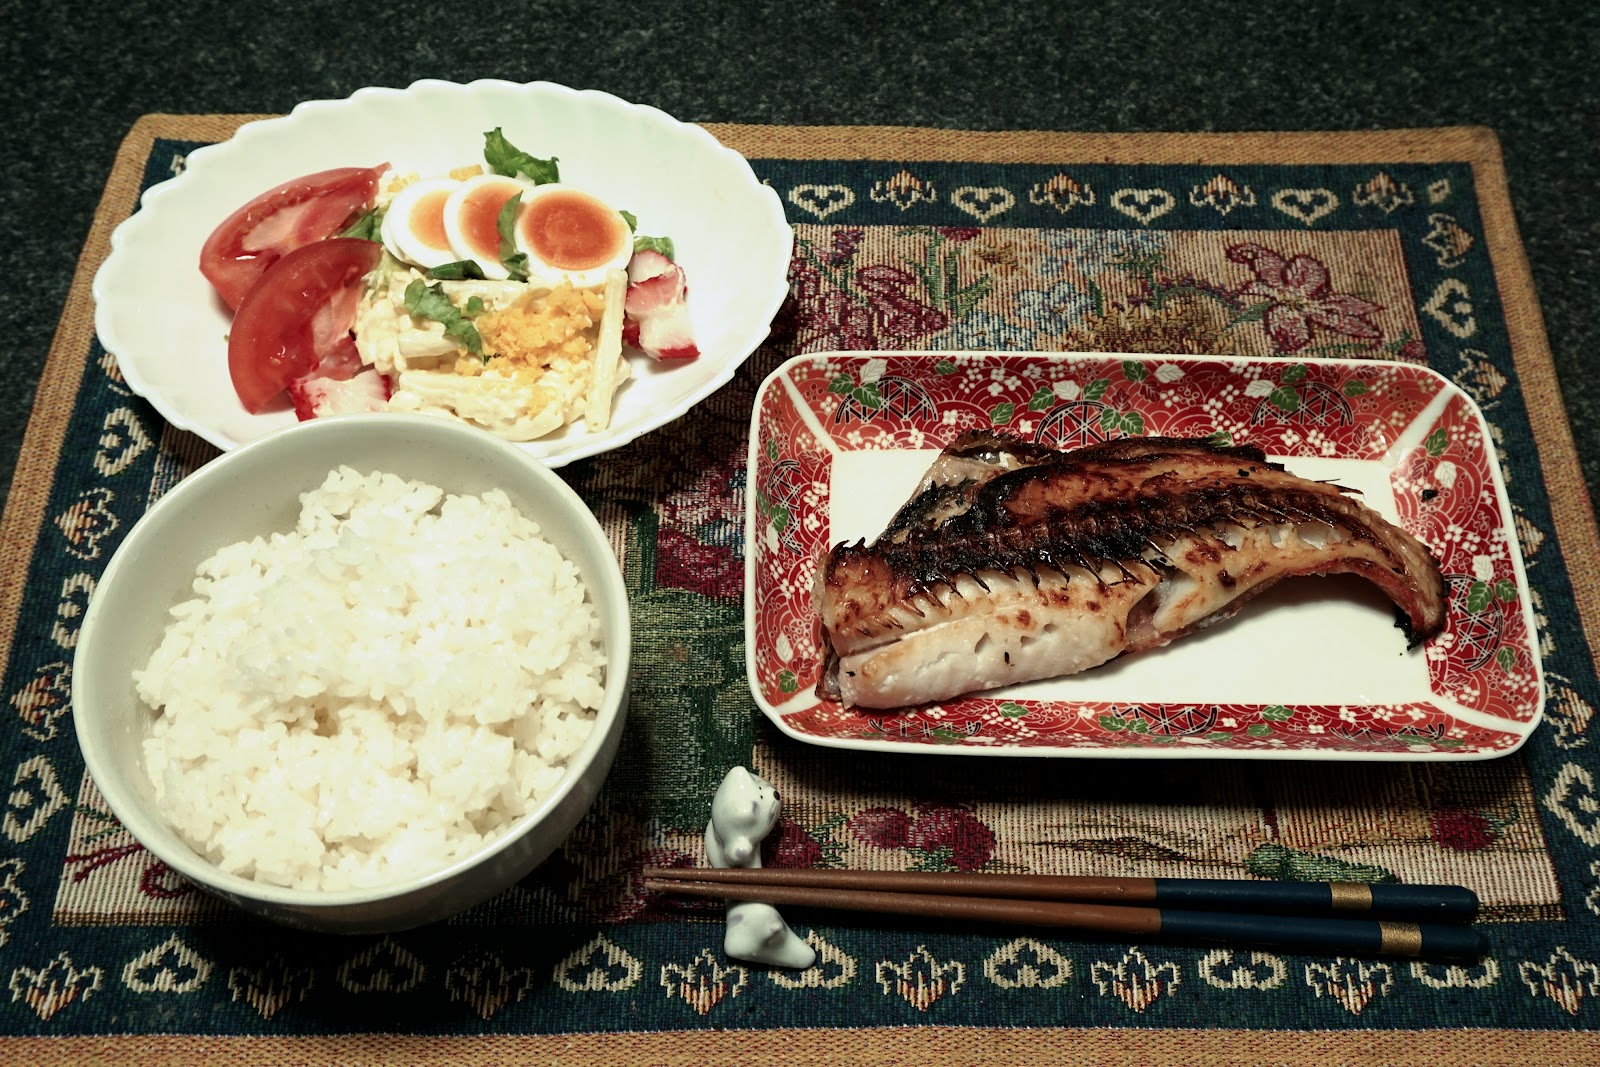 鯛の粕漬けとご飯と生野菜サラダの食卓